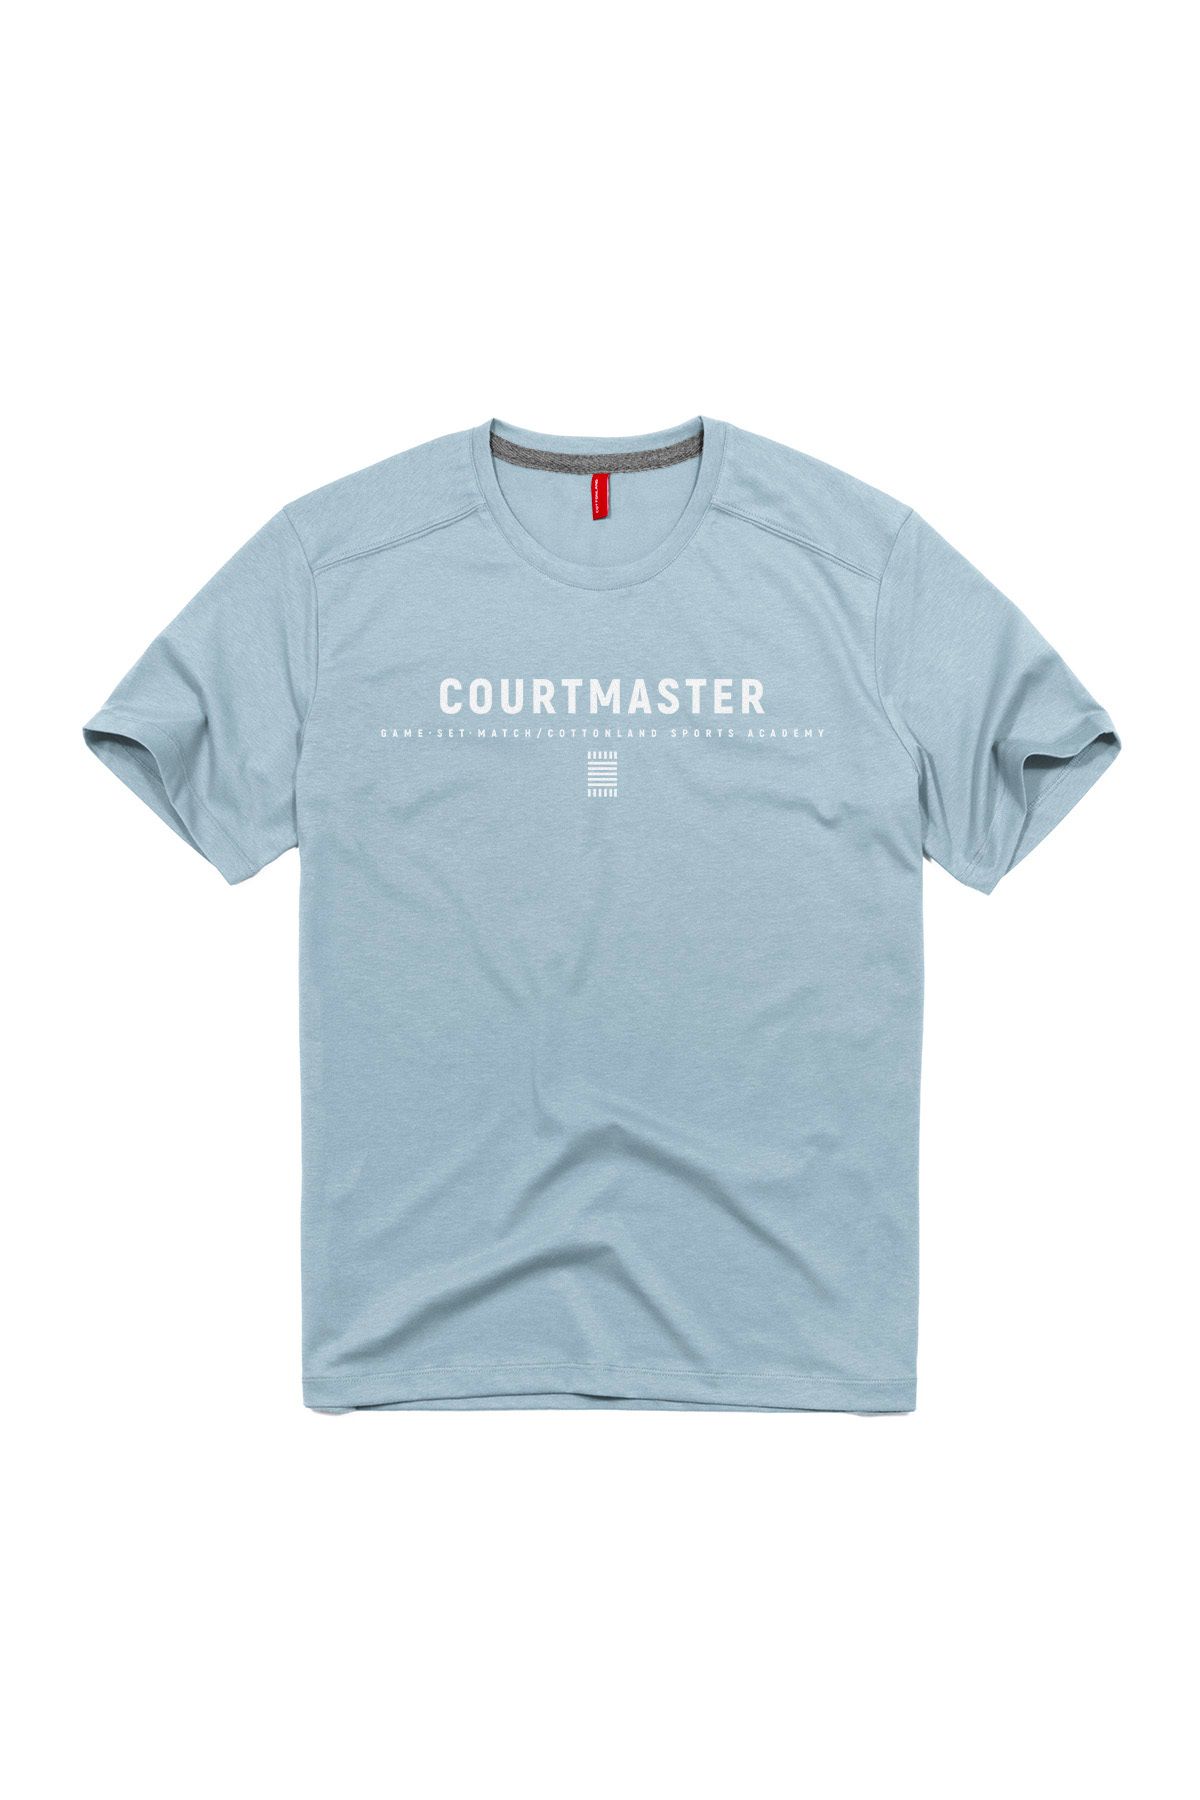 CottonLand Erkek COURT Rahat Kesim O Yaka Baskılı Penye Pamuk T-Shirt AÇIK MAVİ